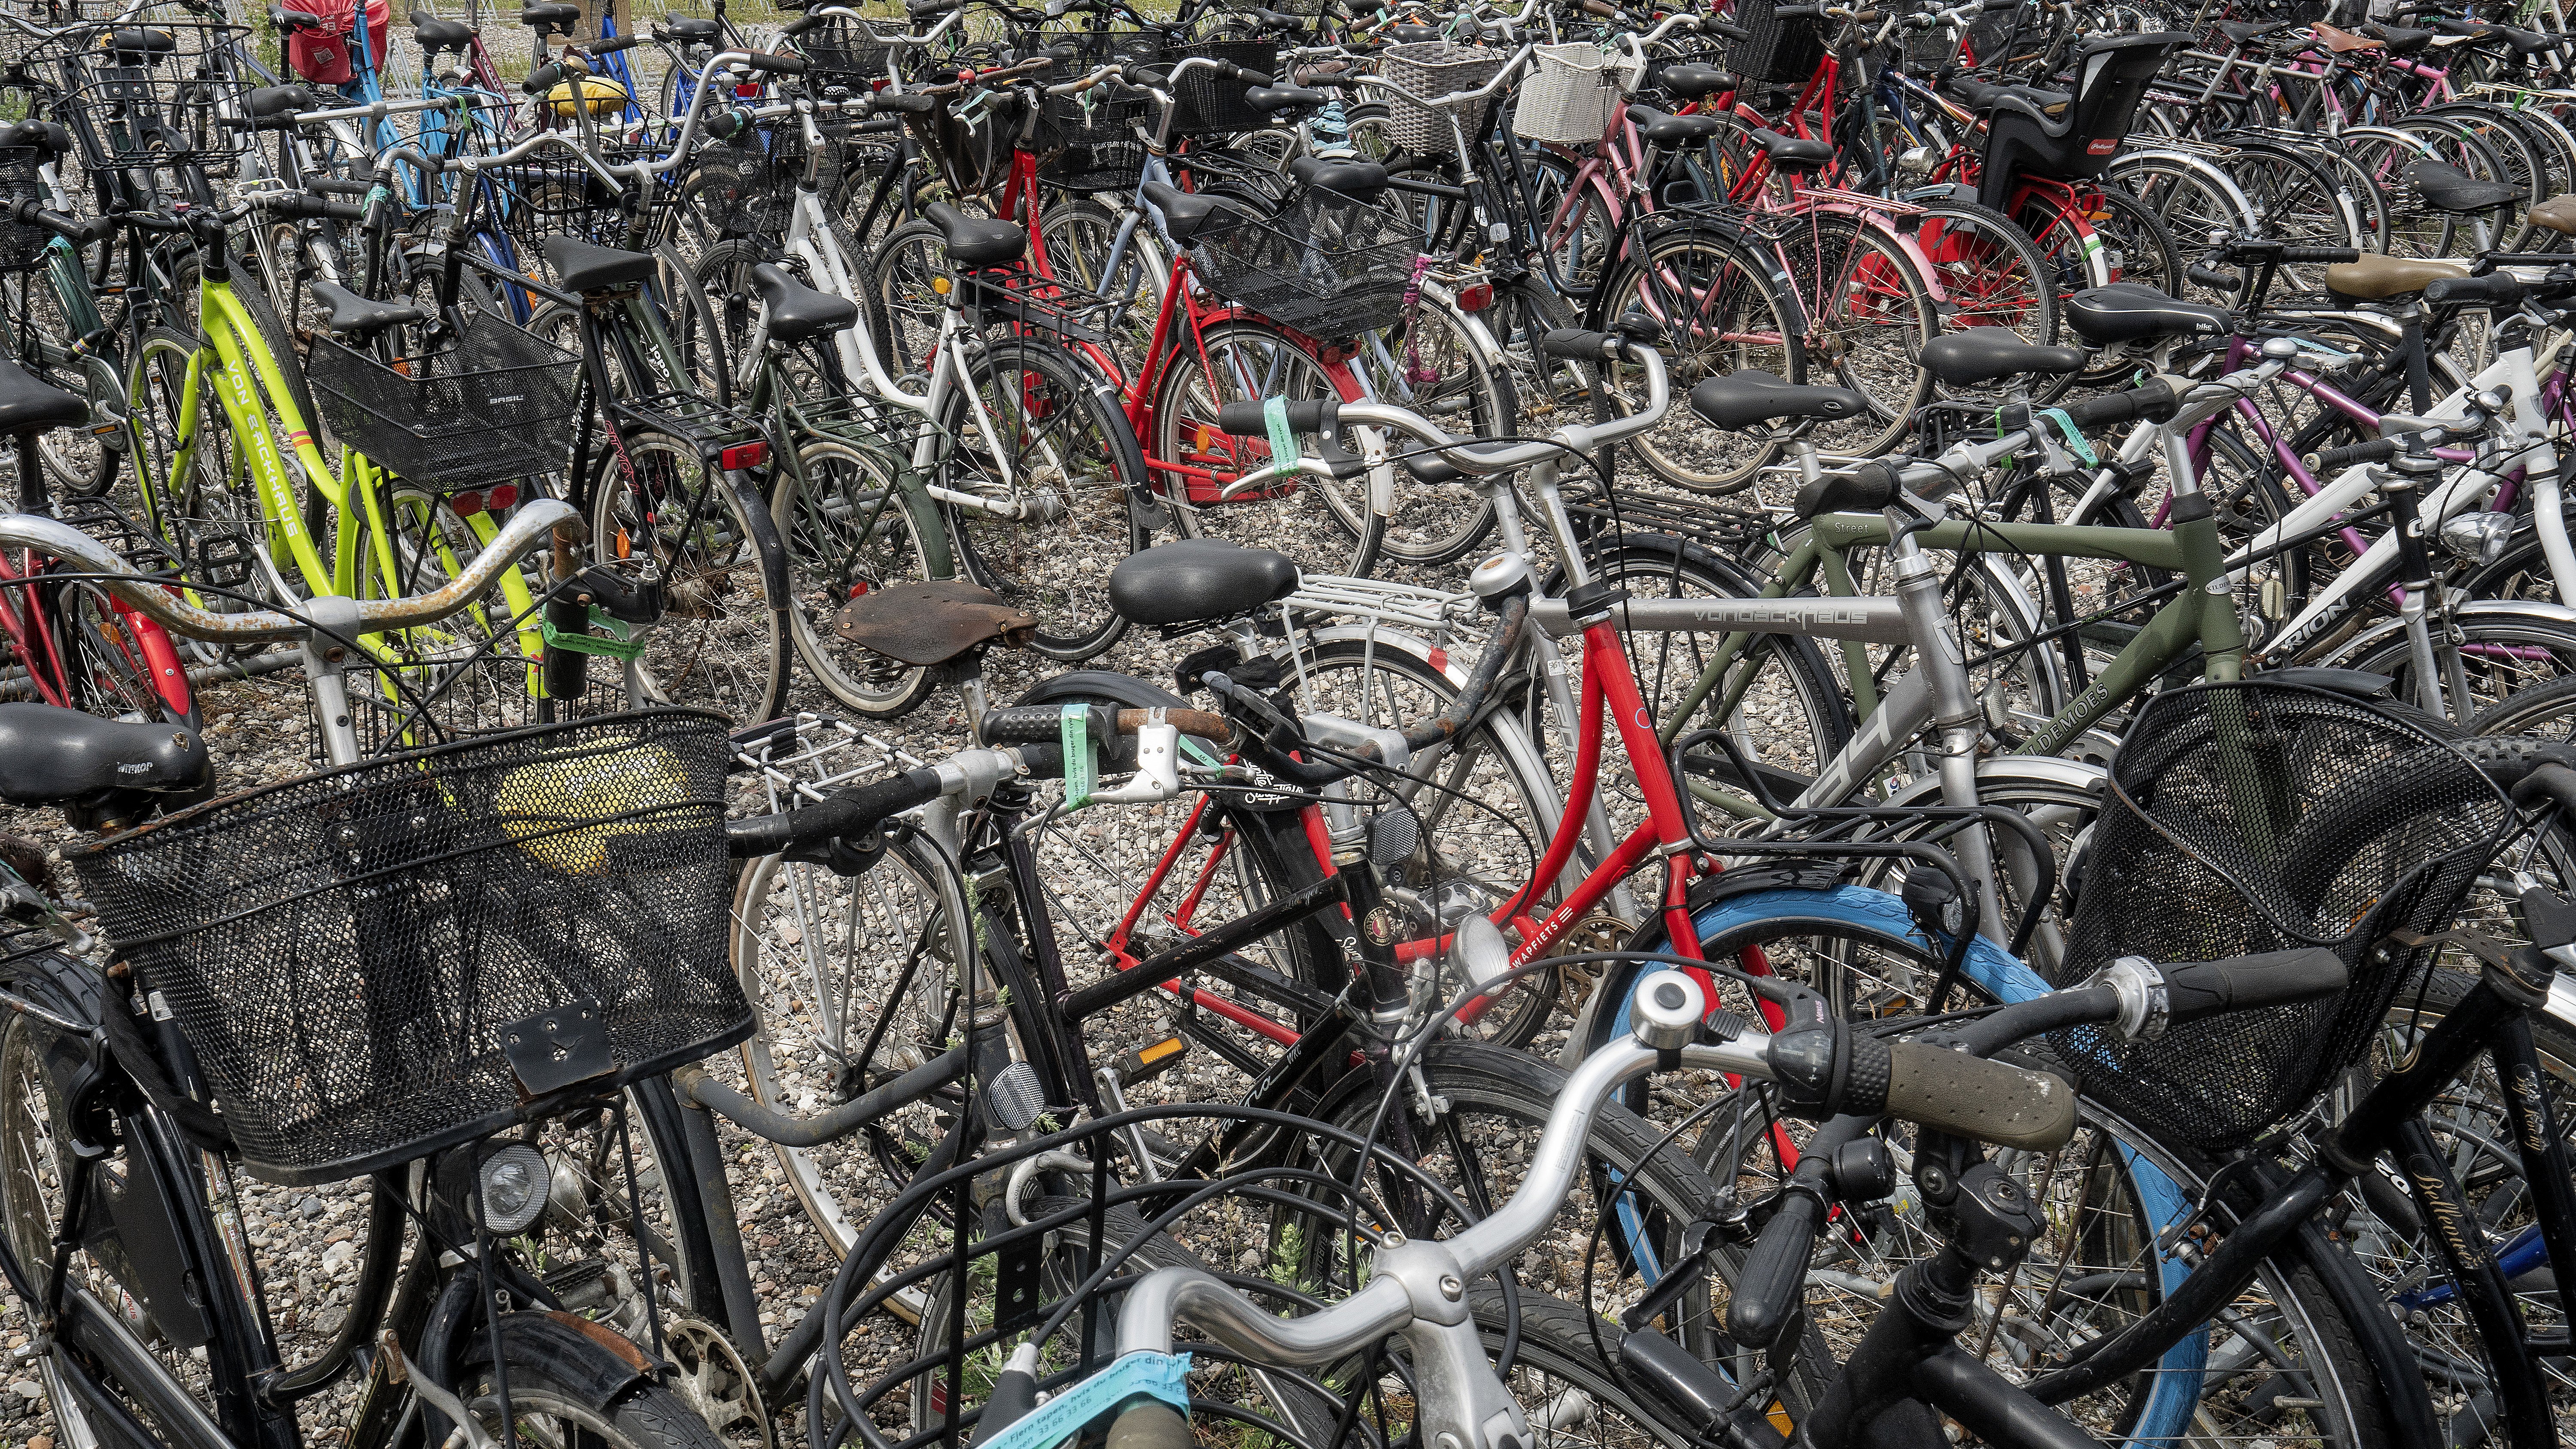 Omgivelser nægte royalty Politi finder cykler for 500.000 kroner efter salgsannonce | TV 2 Kosmopol